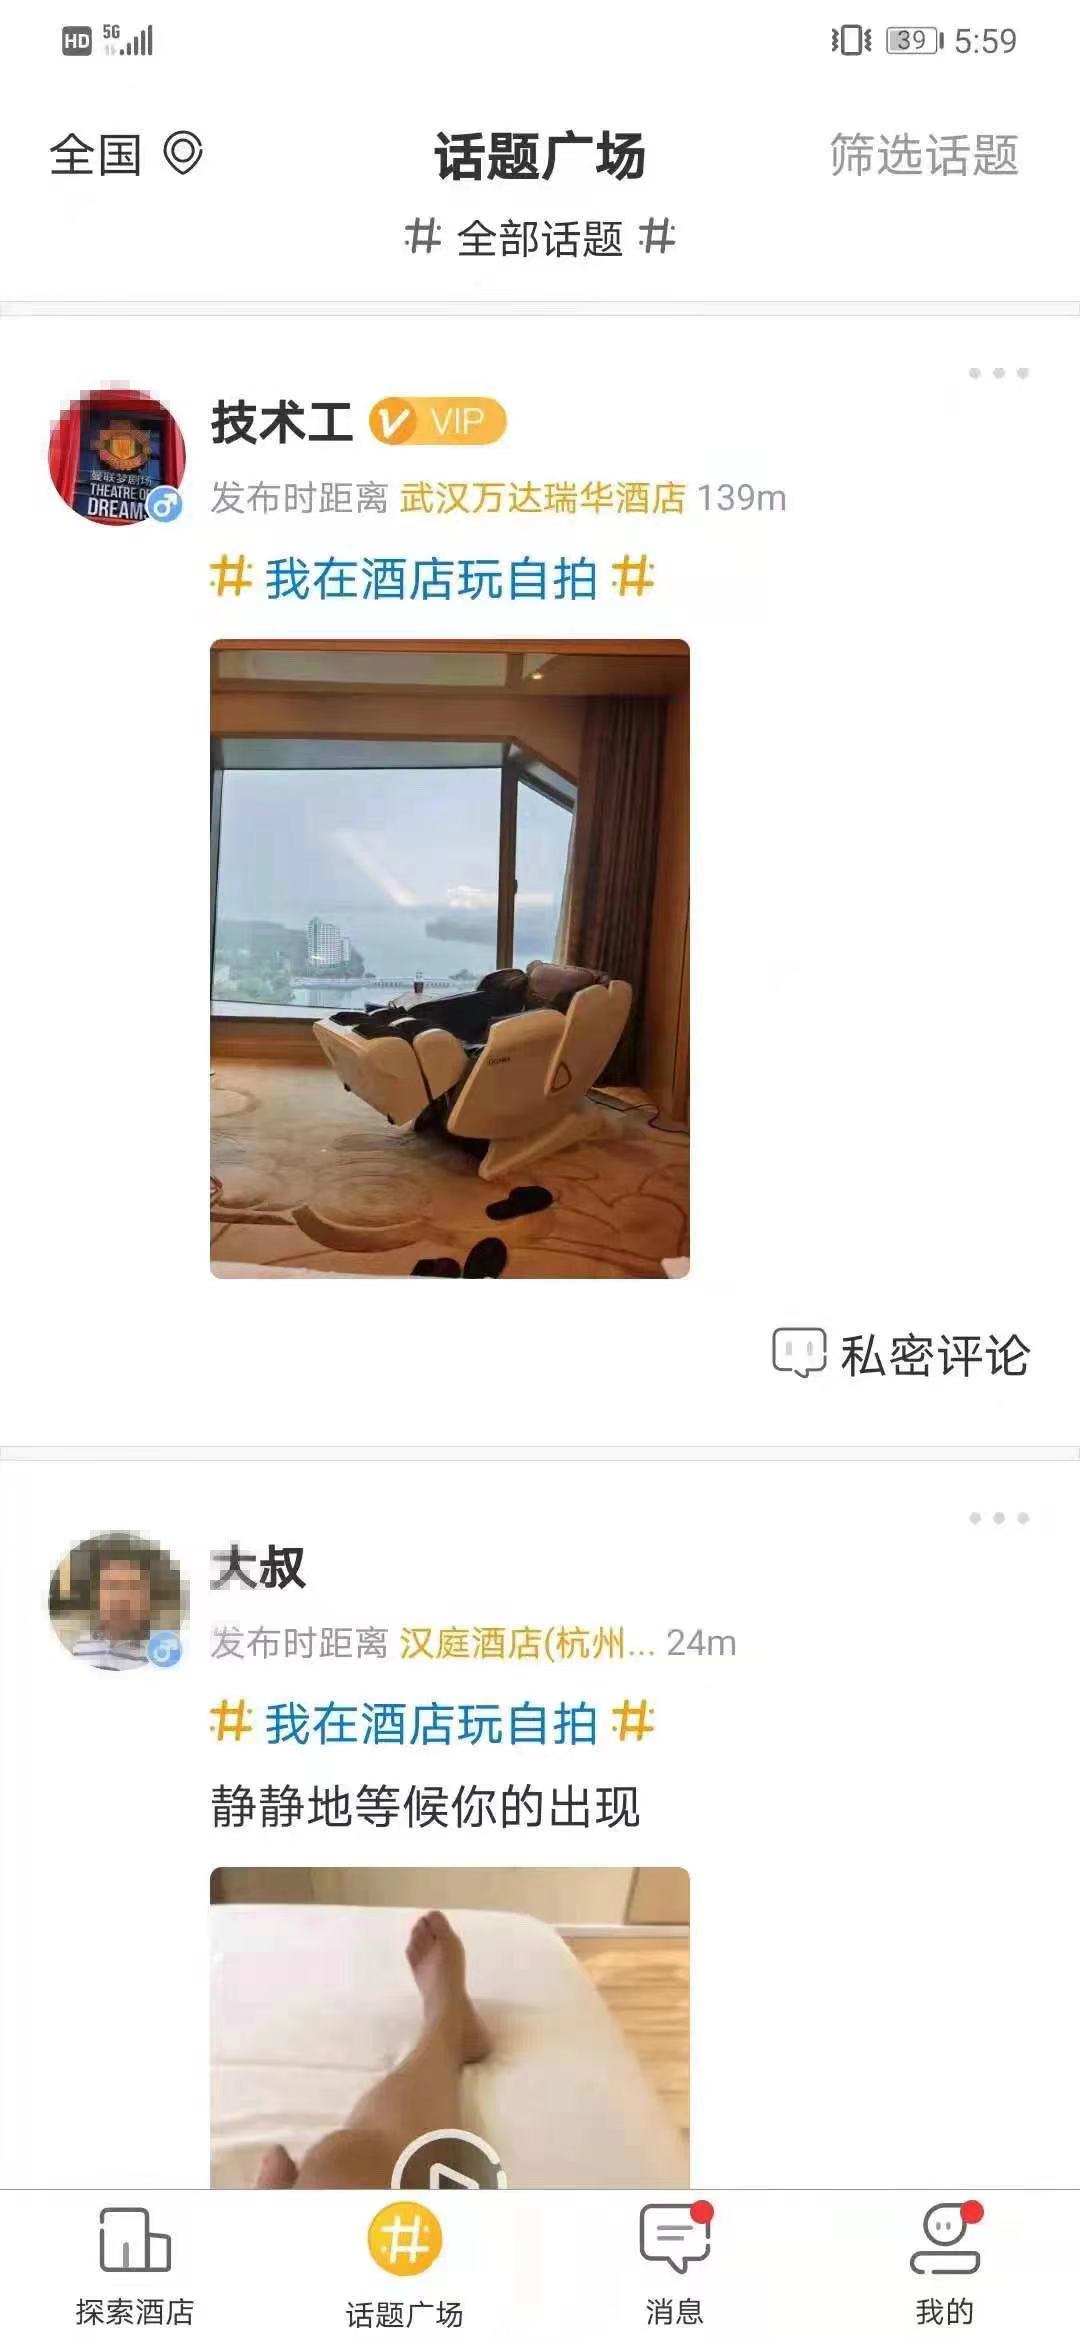 上海警方查处趣住APP：团伙创上万个“虚拟女性”账号诈骗